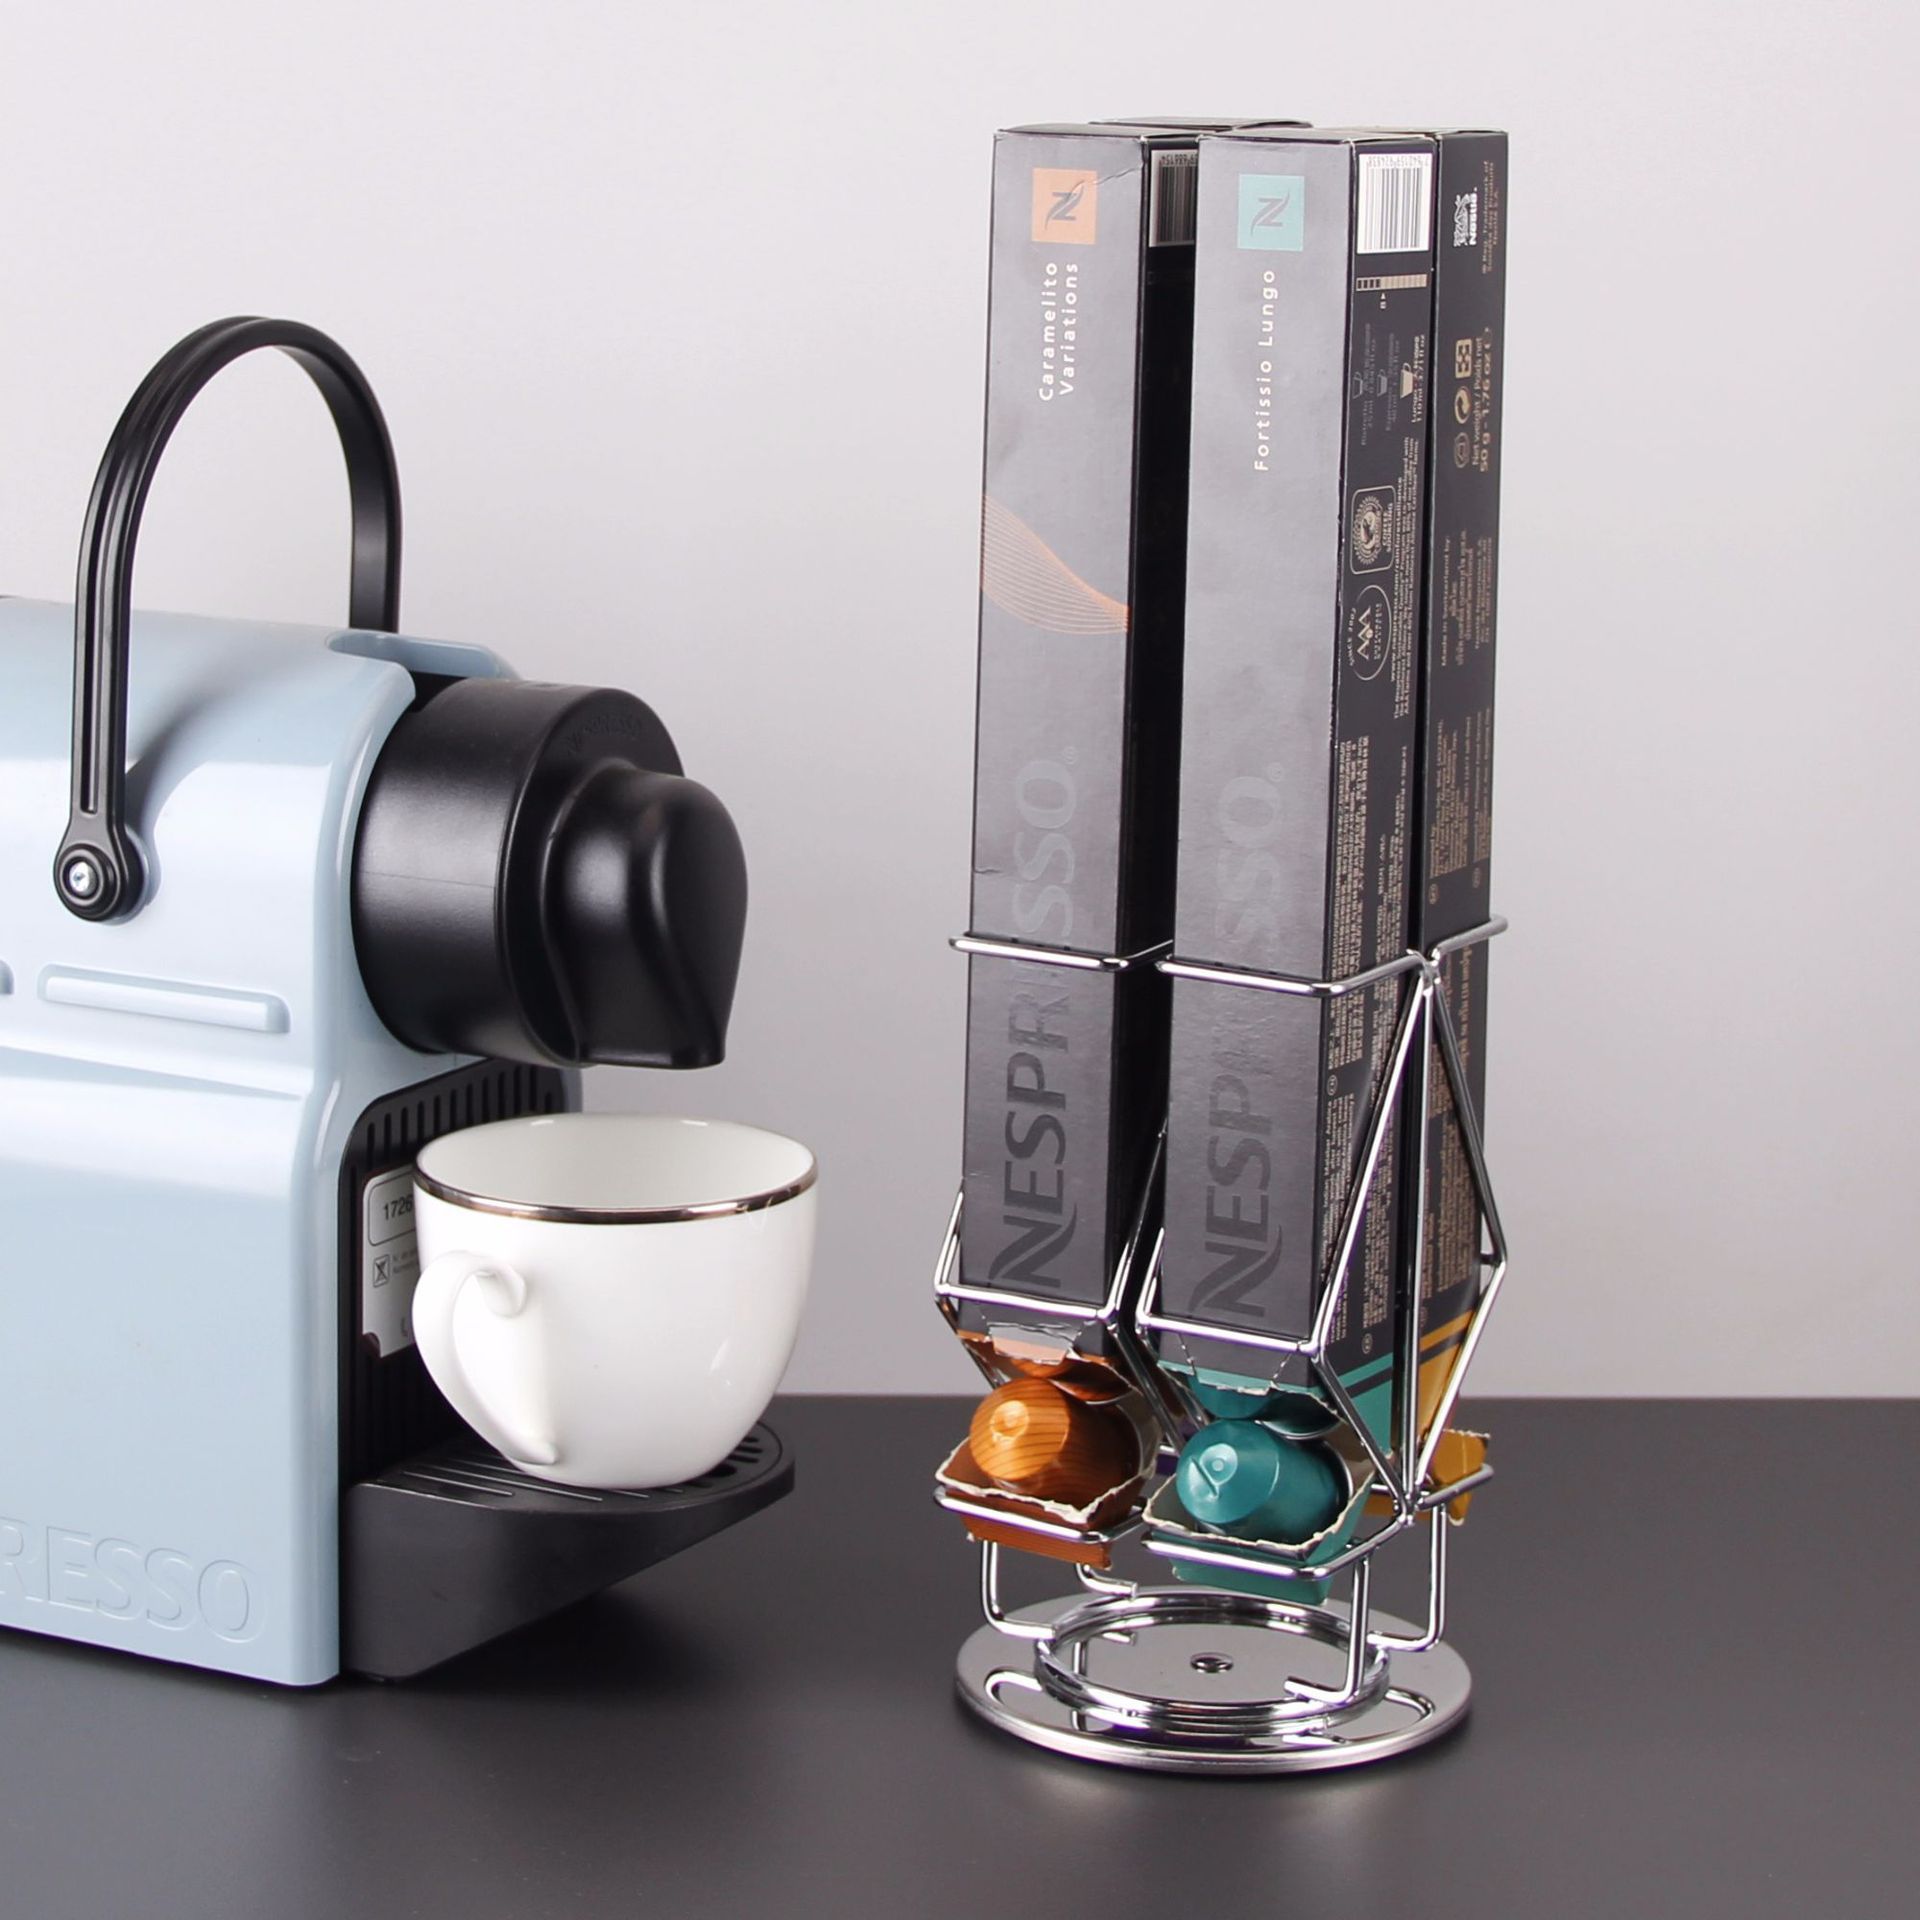 膠囊咖啡架 咖啡架 膠囊收納架 40粒適用于Nespresso奈斯派索咖啡膠囊架旋轉金屬收納架 單條收納『XY40630』